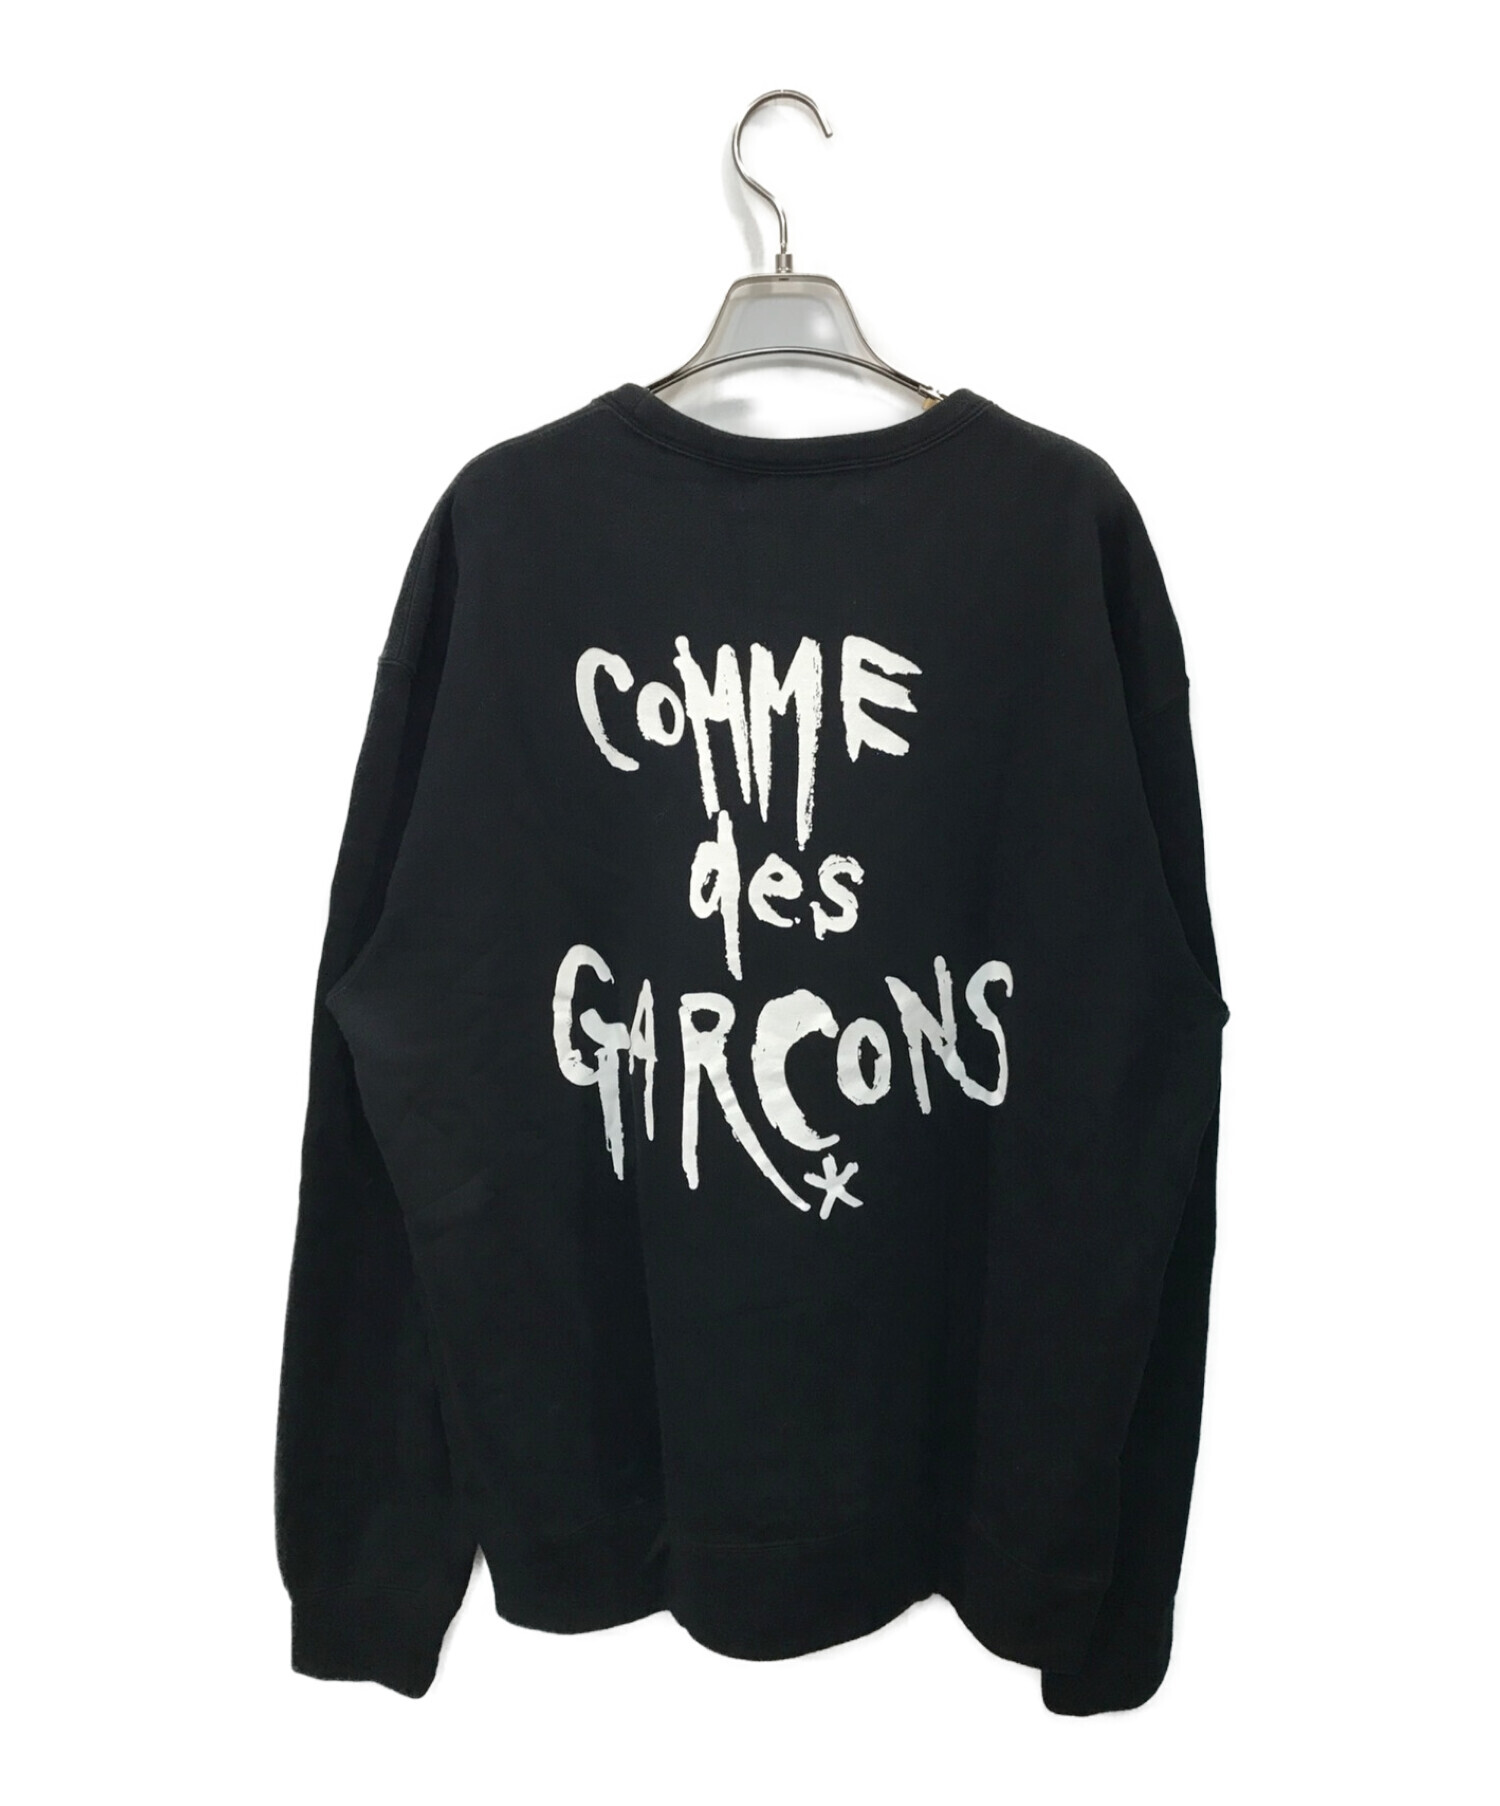 black market COMME des GARCONS (ブラックマーケットコムデギャルソン) CHIC PUNKクルーネックスウェット  ブラック サイズ:XXL